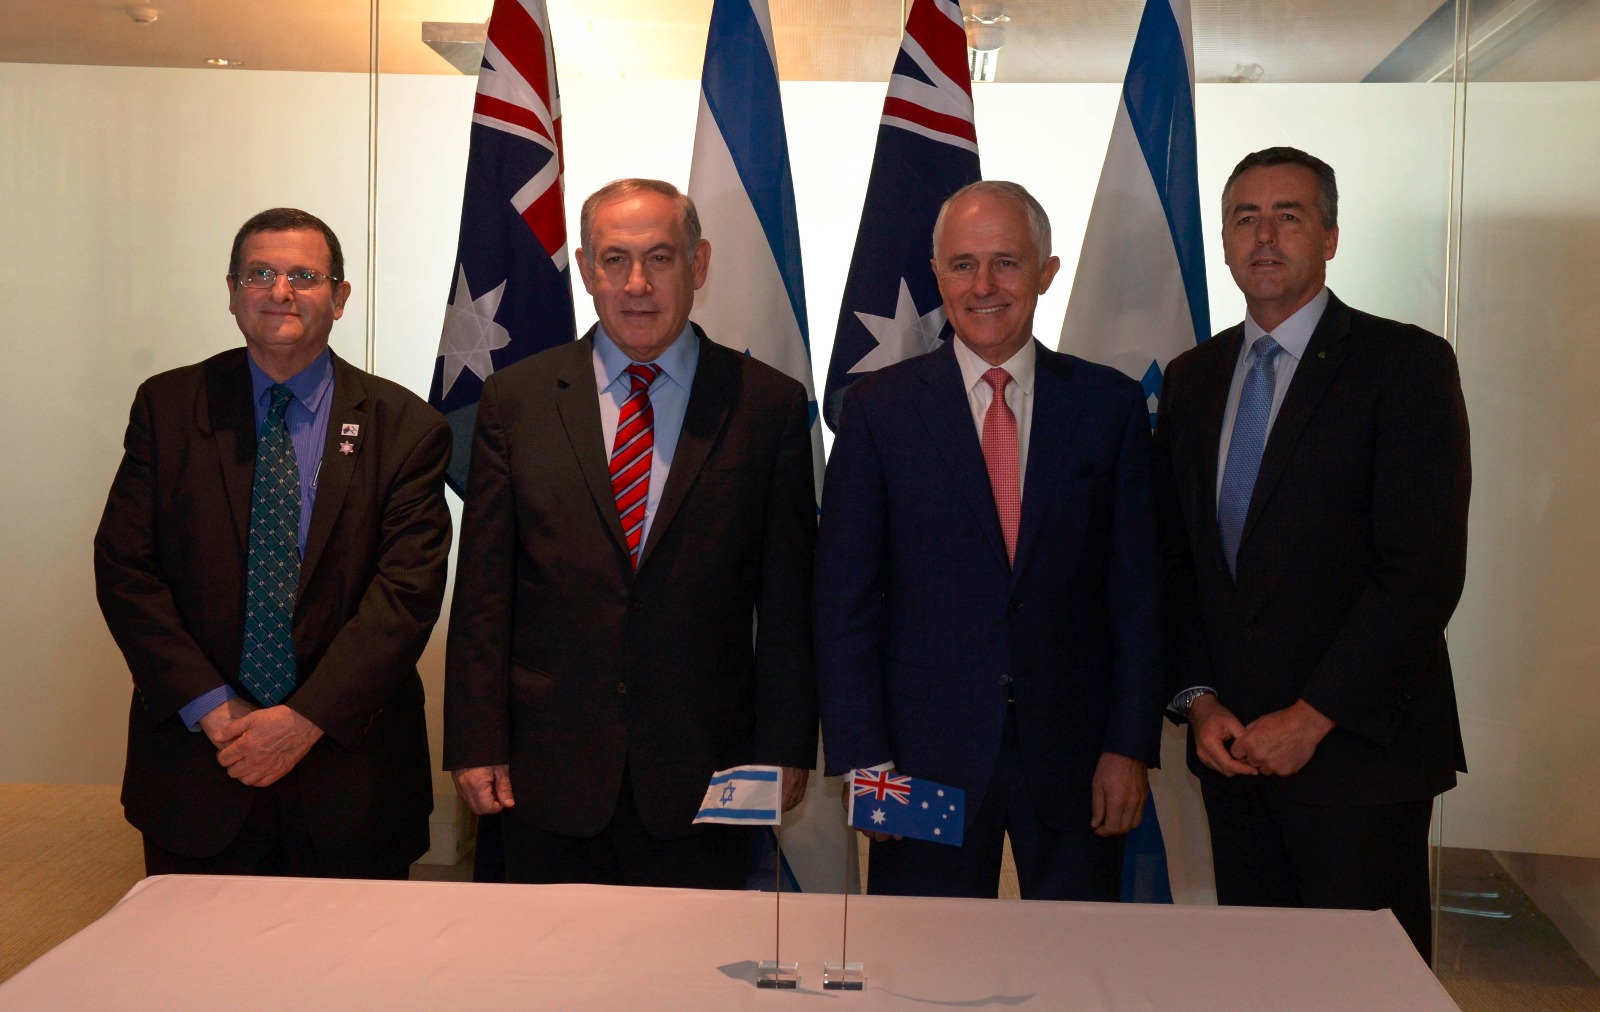 בניימין נתניהו במפגש עם ראש ממשלת אוסטרליה מלקולם טרנבול יחד עם שרי ממשלתו (צילום: חיים צח / לע״מ).